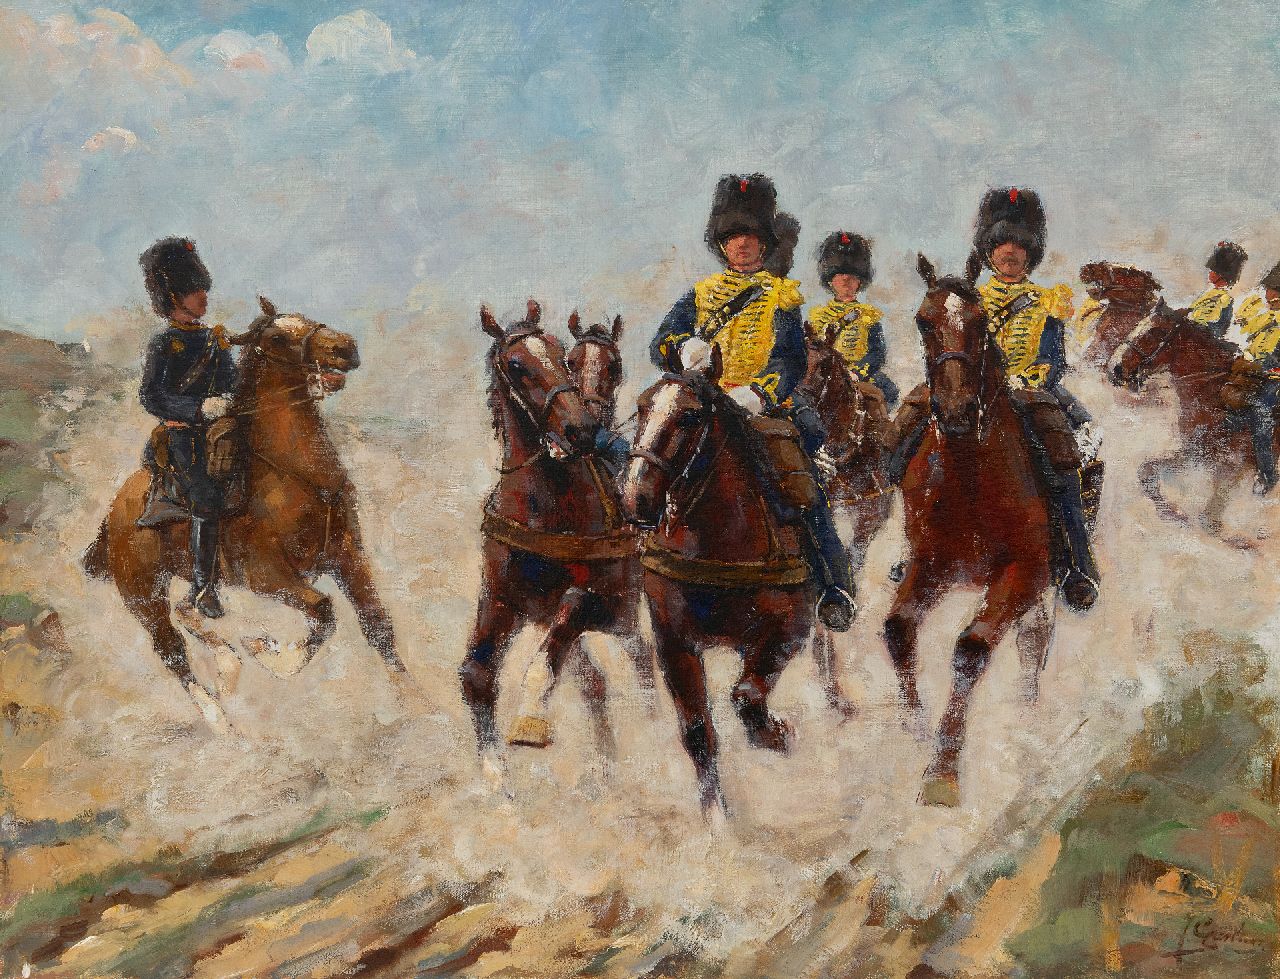 Geerlings J.H.  | Jacob Hendrik Geerlings, 'Gele rijders' in action, oil on canvas 49.7 x 64.4 cm, signed l.r.